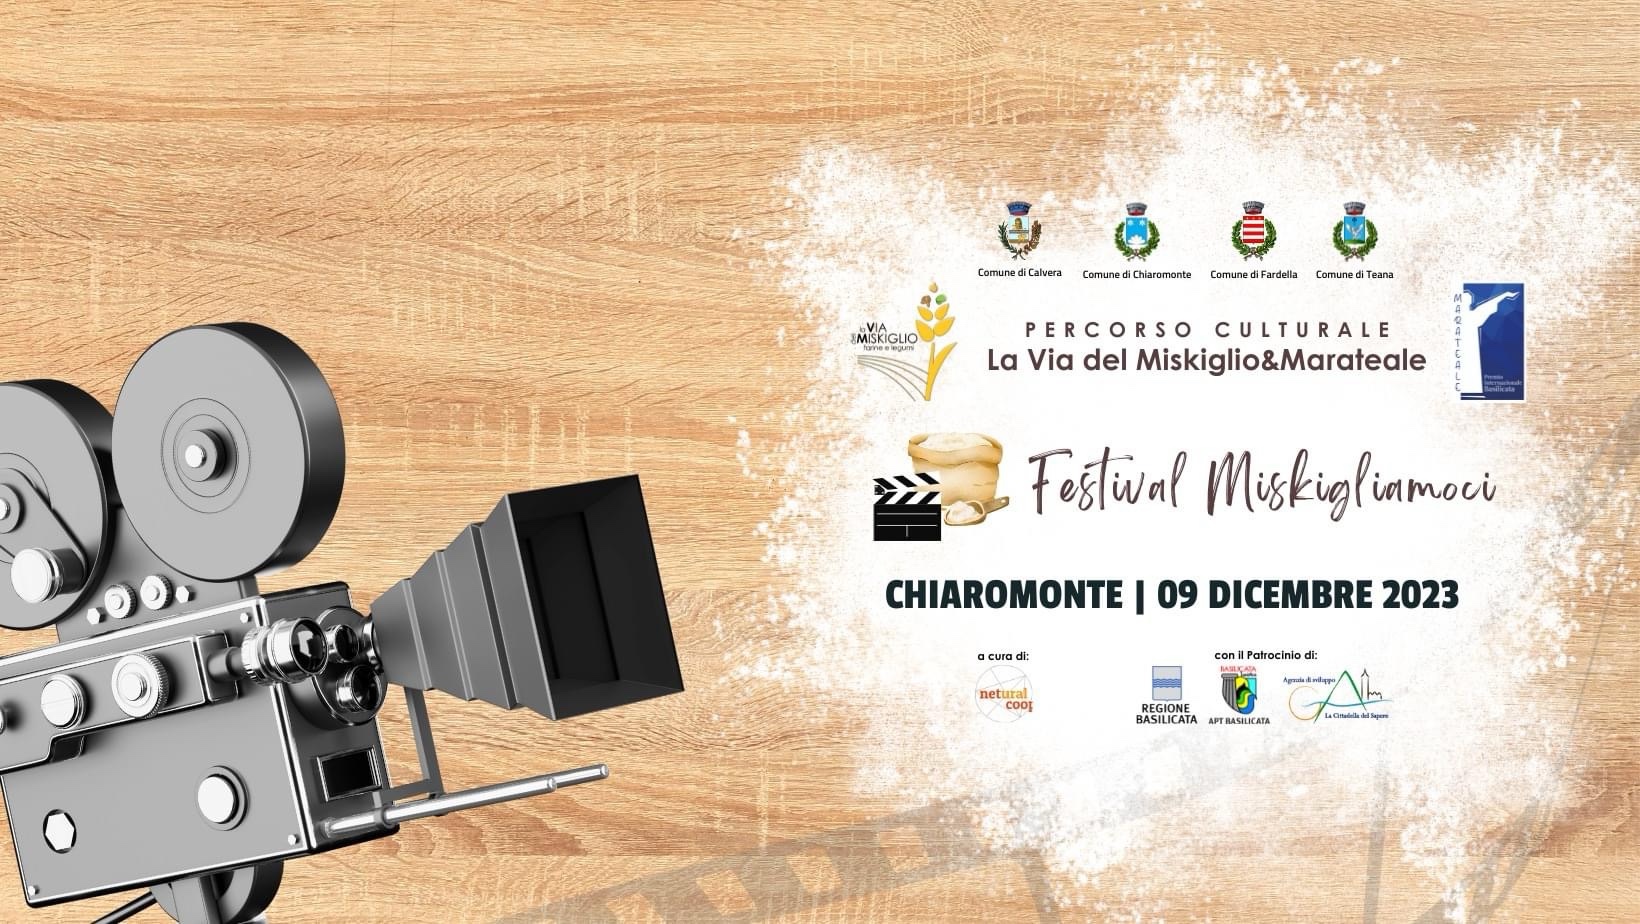 Scopri di più sull'articolo L’evento Inaugurale del Festival Miskigliamoci a Chiaromonte il 9 Dicembre 2023